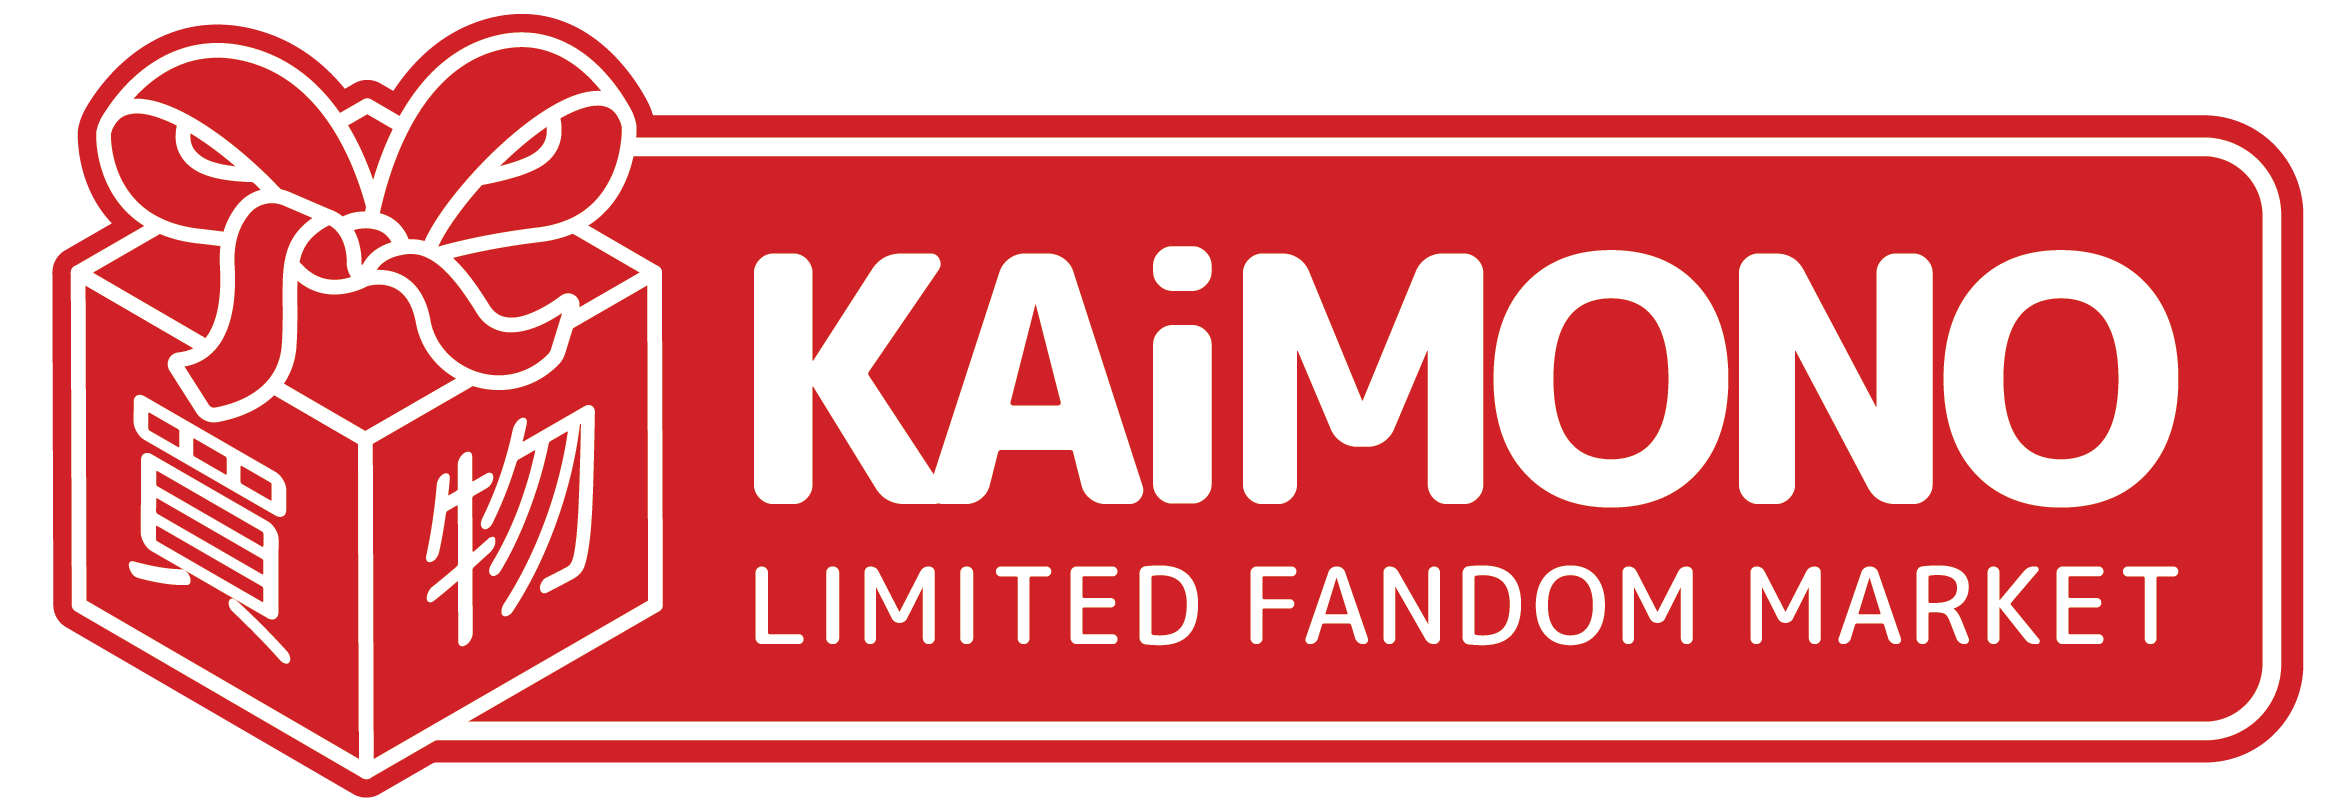 Kaimonomerch Anime Nyc